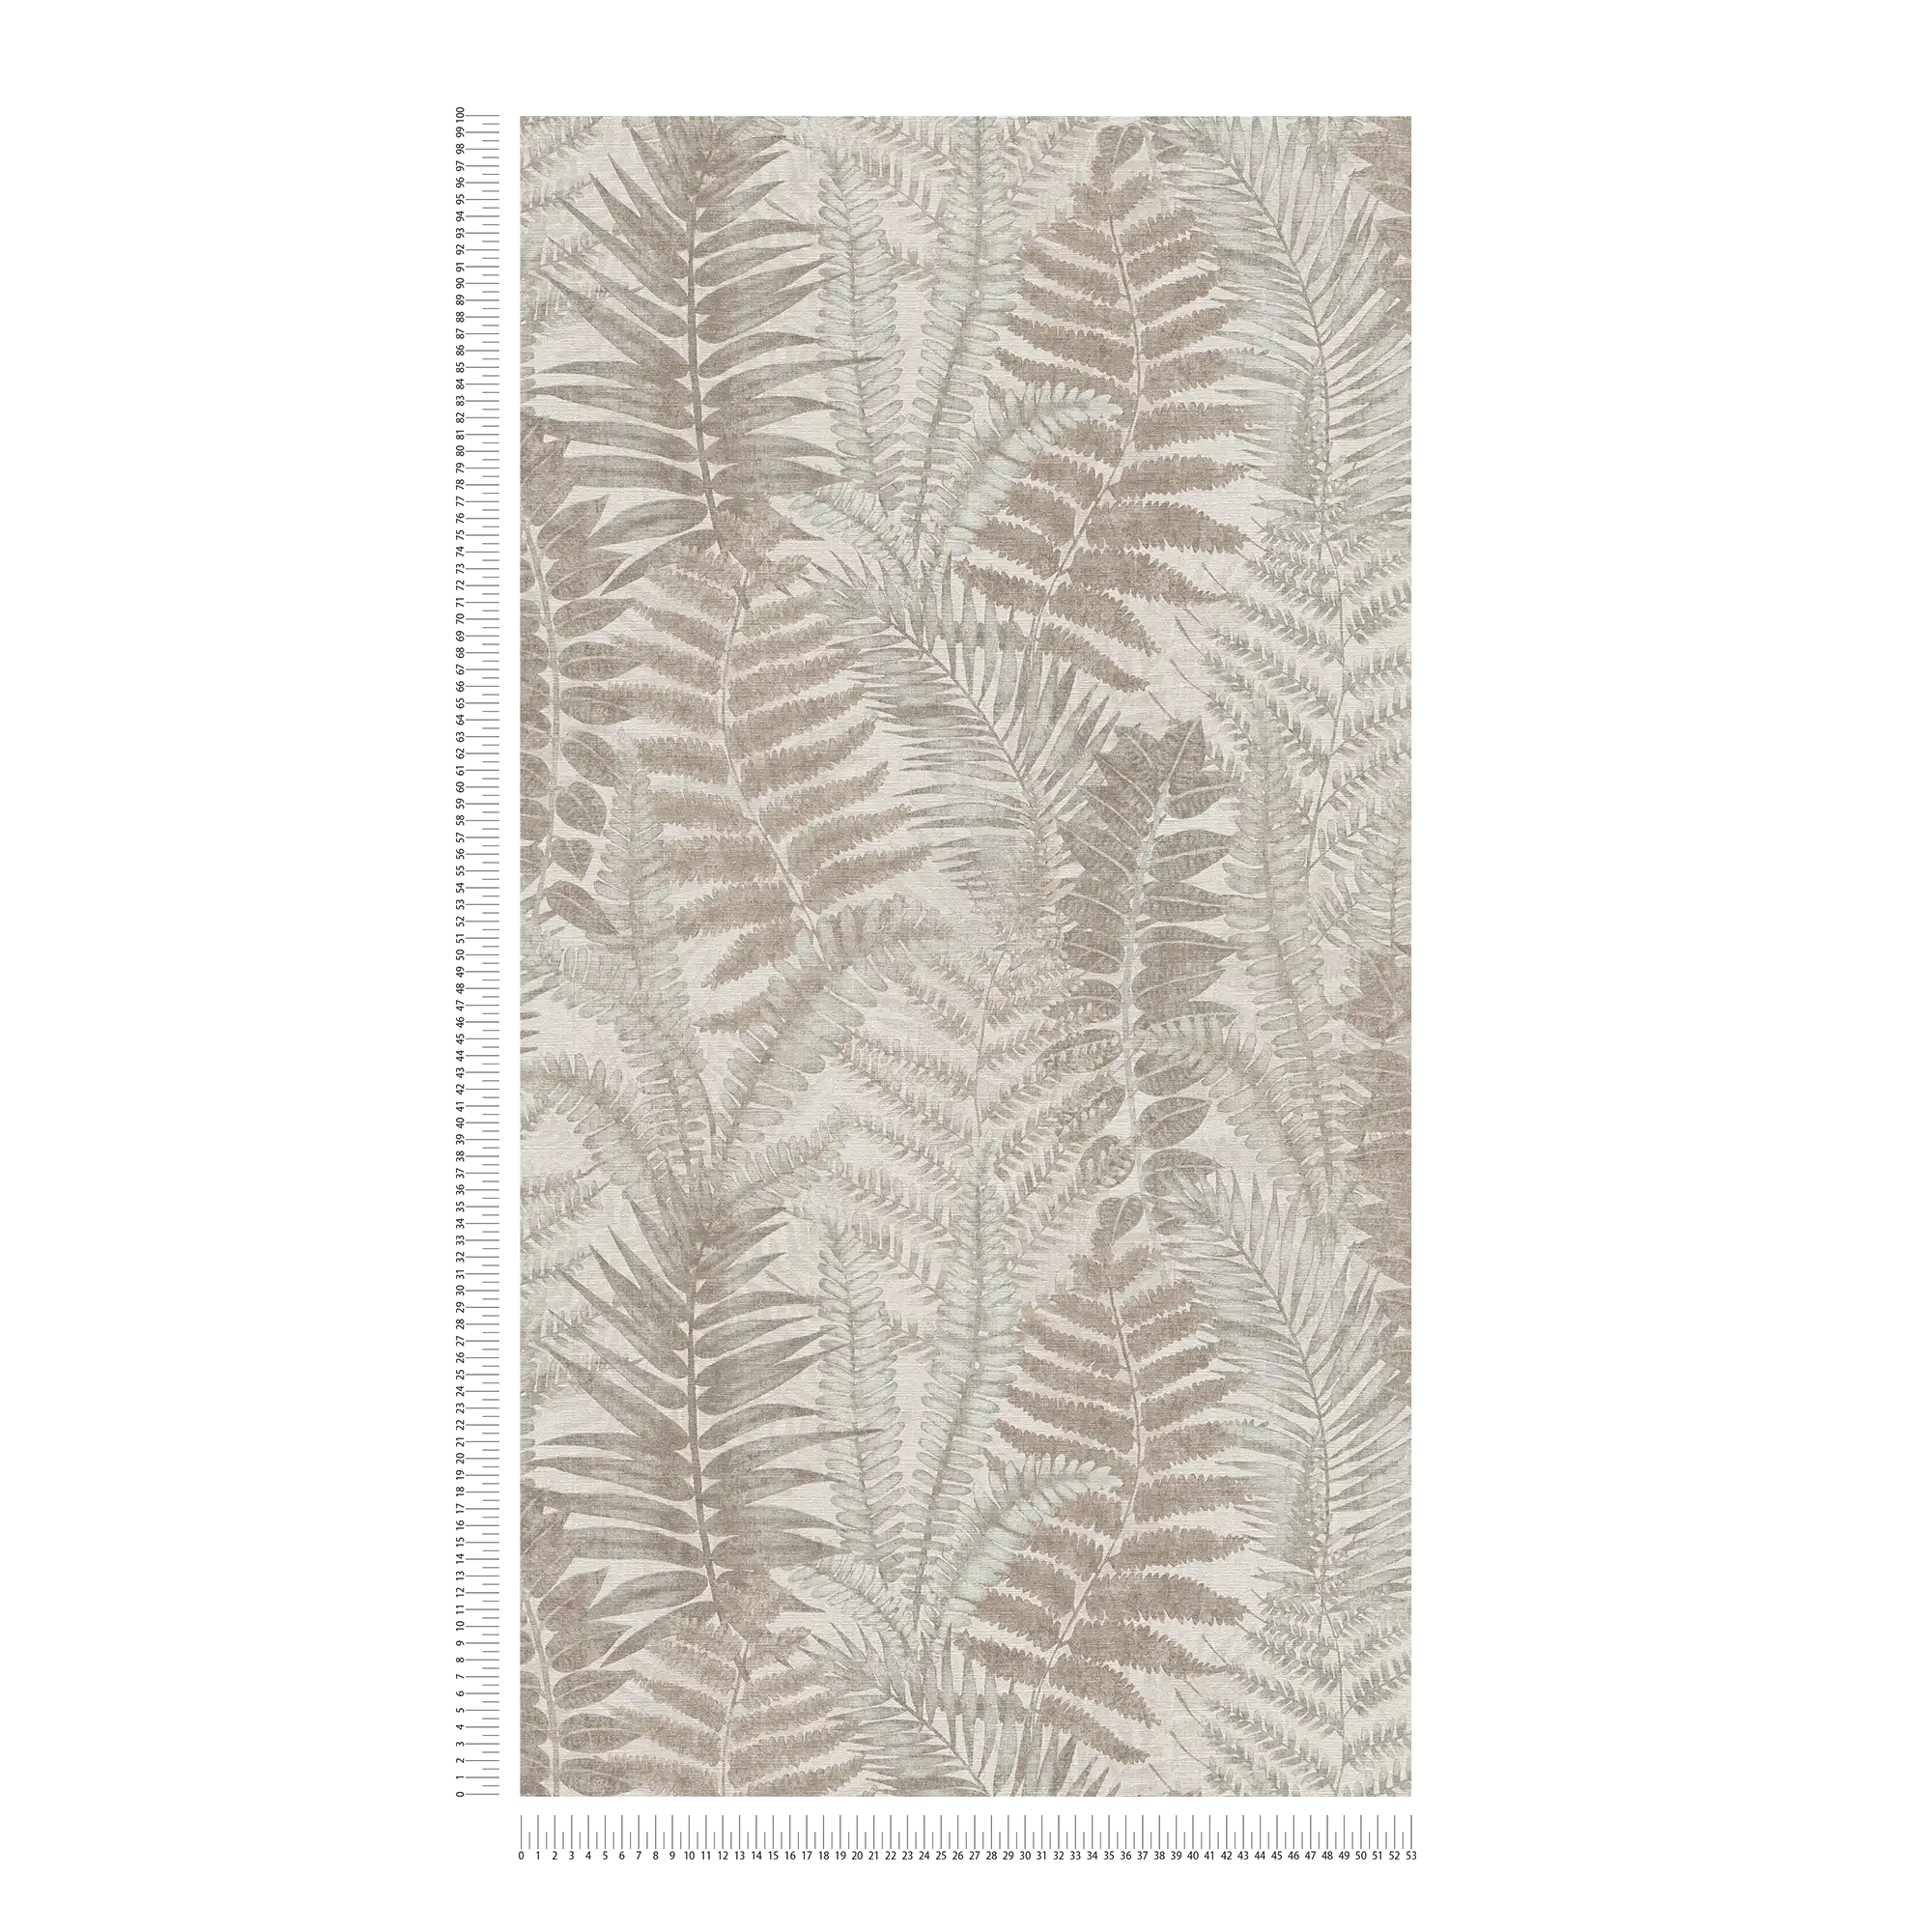             Carta da parati floreale in tessuto non tessuto con foglie di felce, leggermente strutturata, opaca - grigio, beige, taupe
        